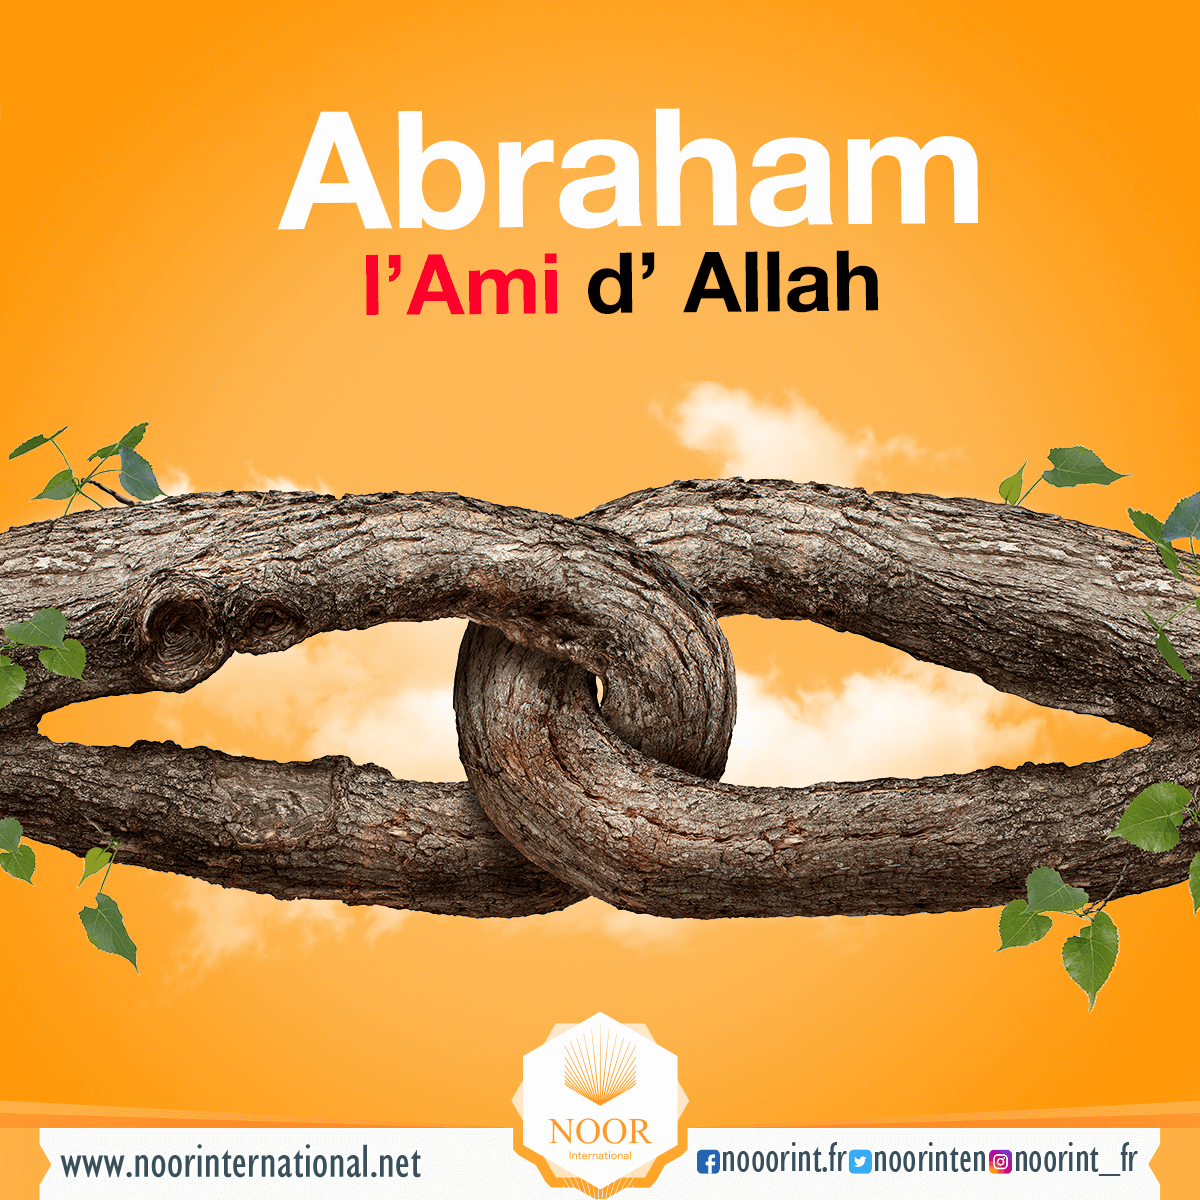 Abraham, l’Ami d’ Allah